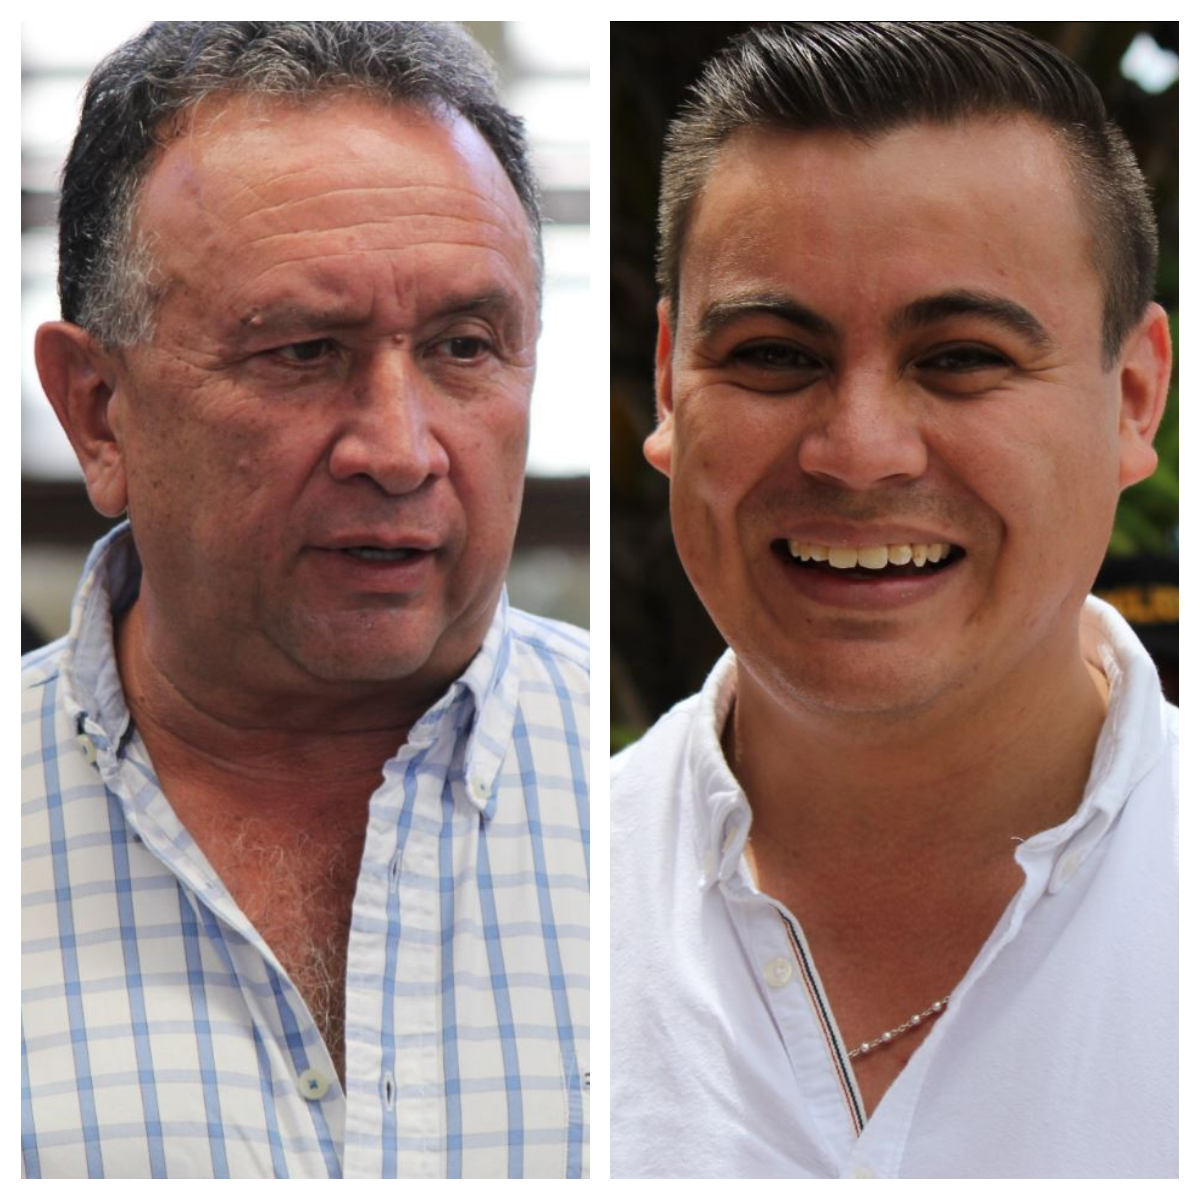 Alfredo Sandoval sustituirá a Mario Estrada Ruano en la alcaldía de Jalapa, según los datos preliminares del Tribunal Supremo Electoral. (Fotos Prensa Libre: Luis López)